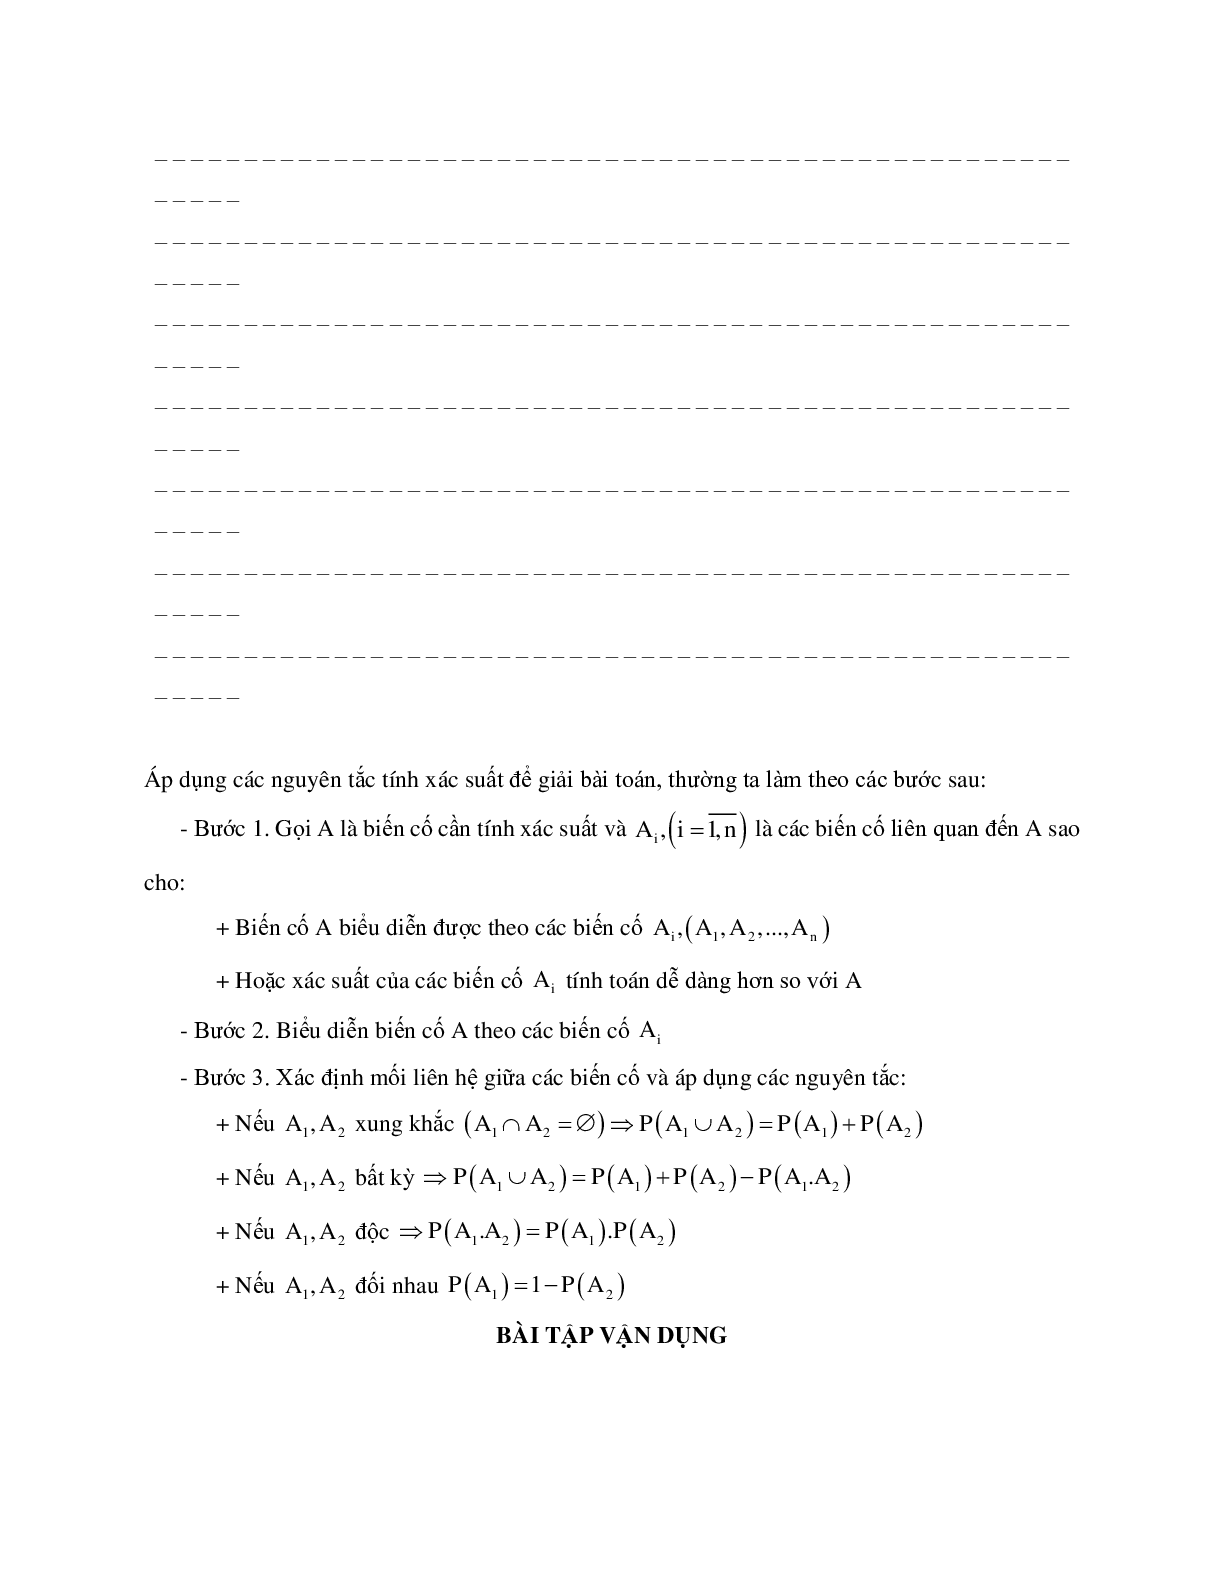 Phương pháp giải về Các quy tắc tính xác suất 2023 (lý thuyết và bài tập) (trang 5)